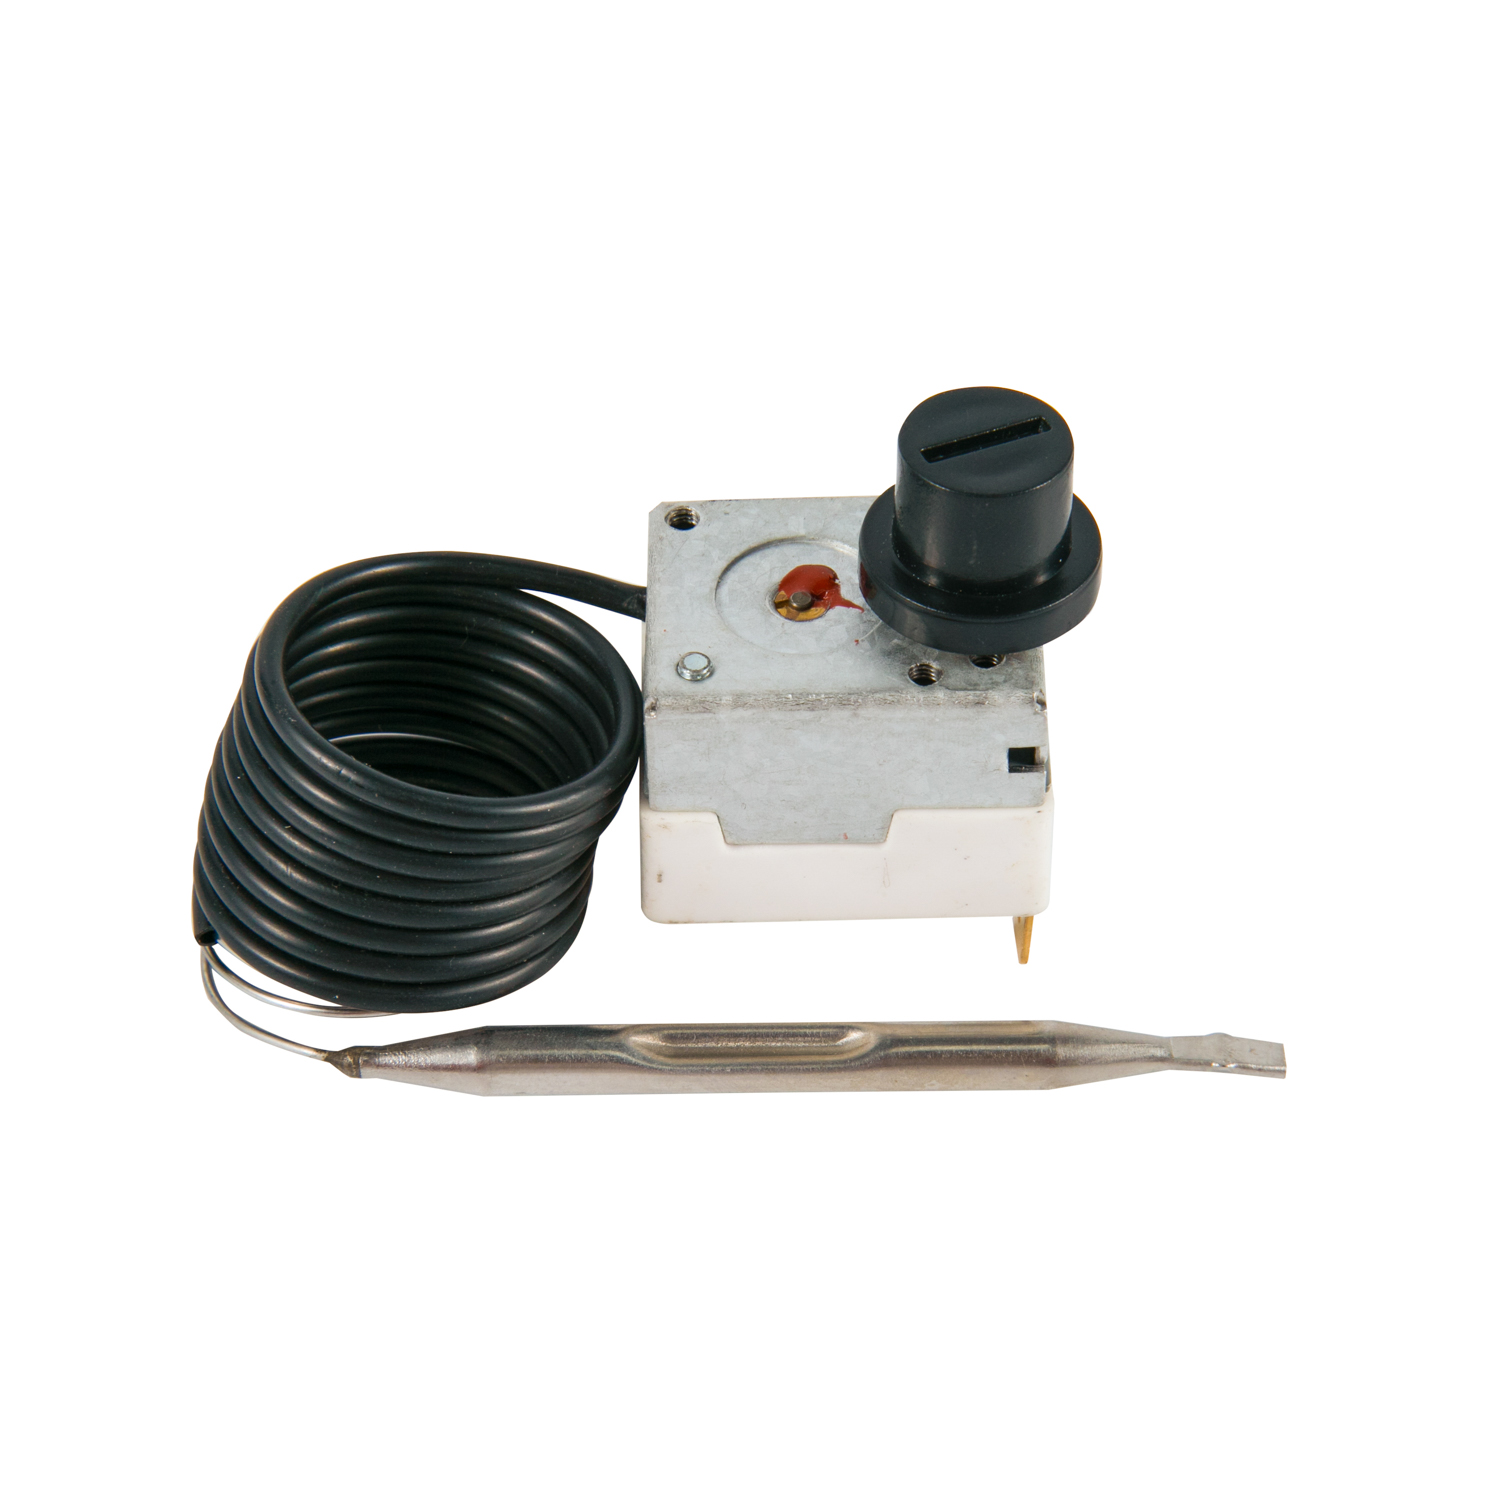 Thermostat capillaire réglable 30-250 degrés pour four électrique/chauffe-eau